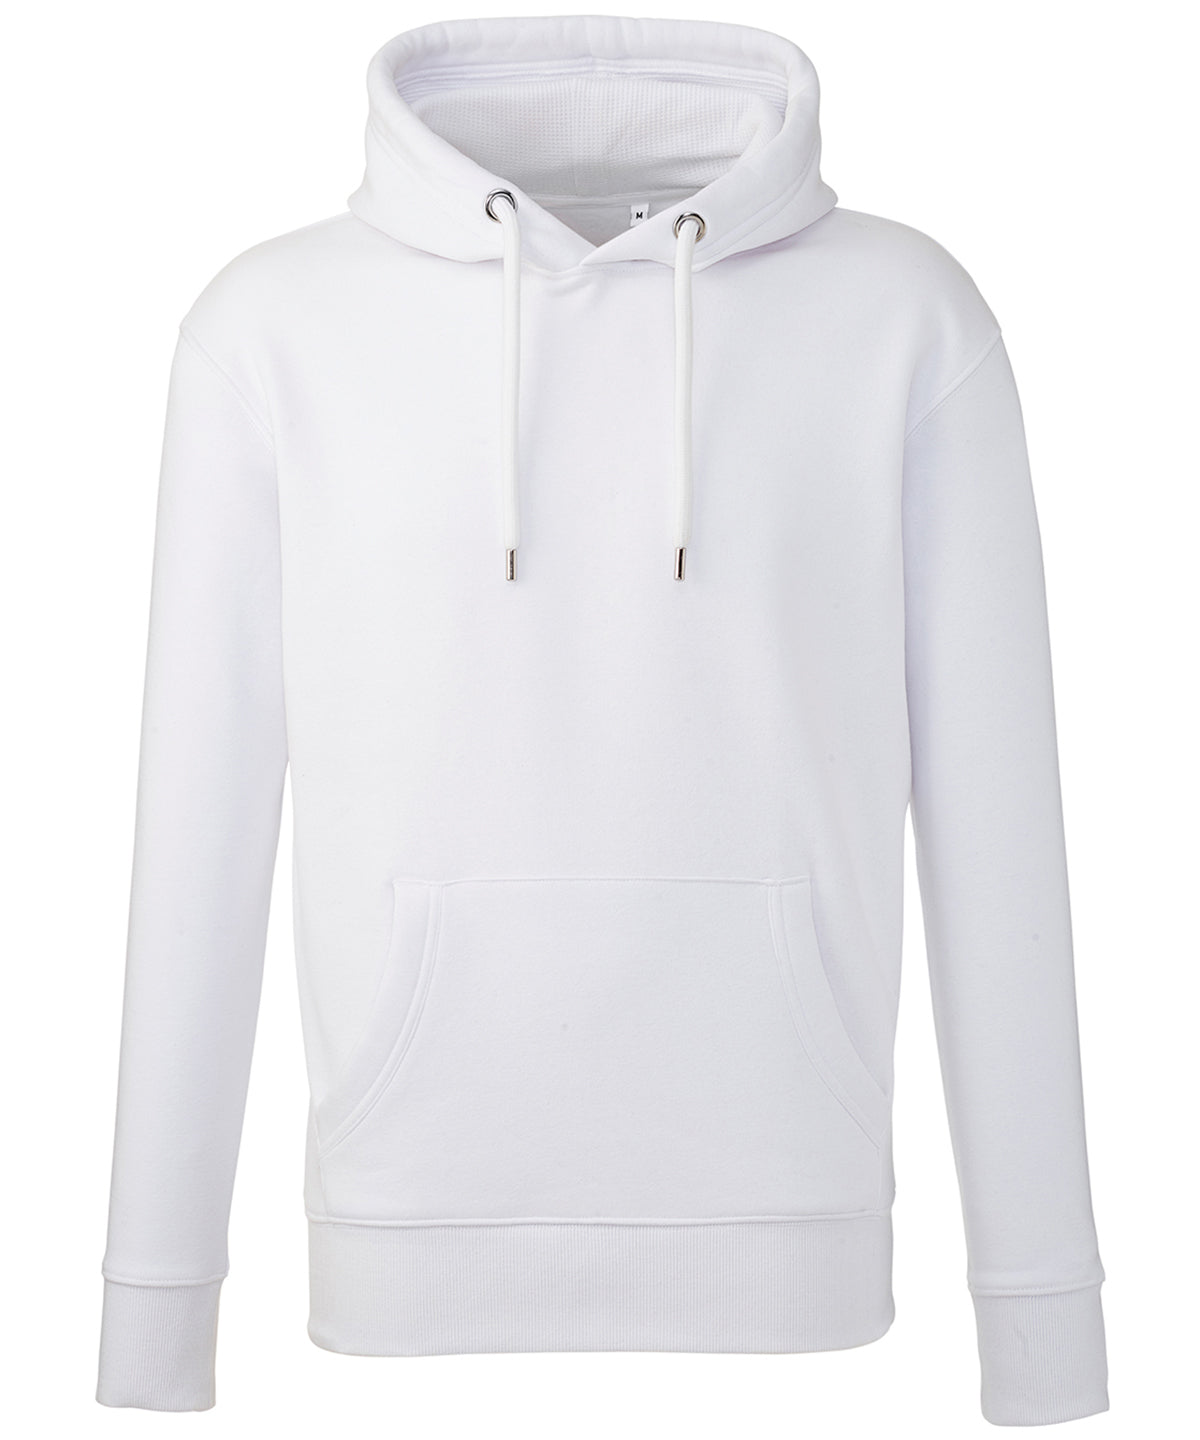 Personalised Hoodies - White Anthem Men's Anthem hoodie